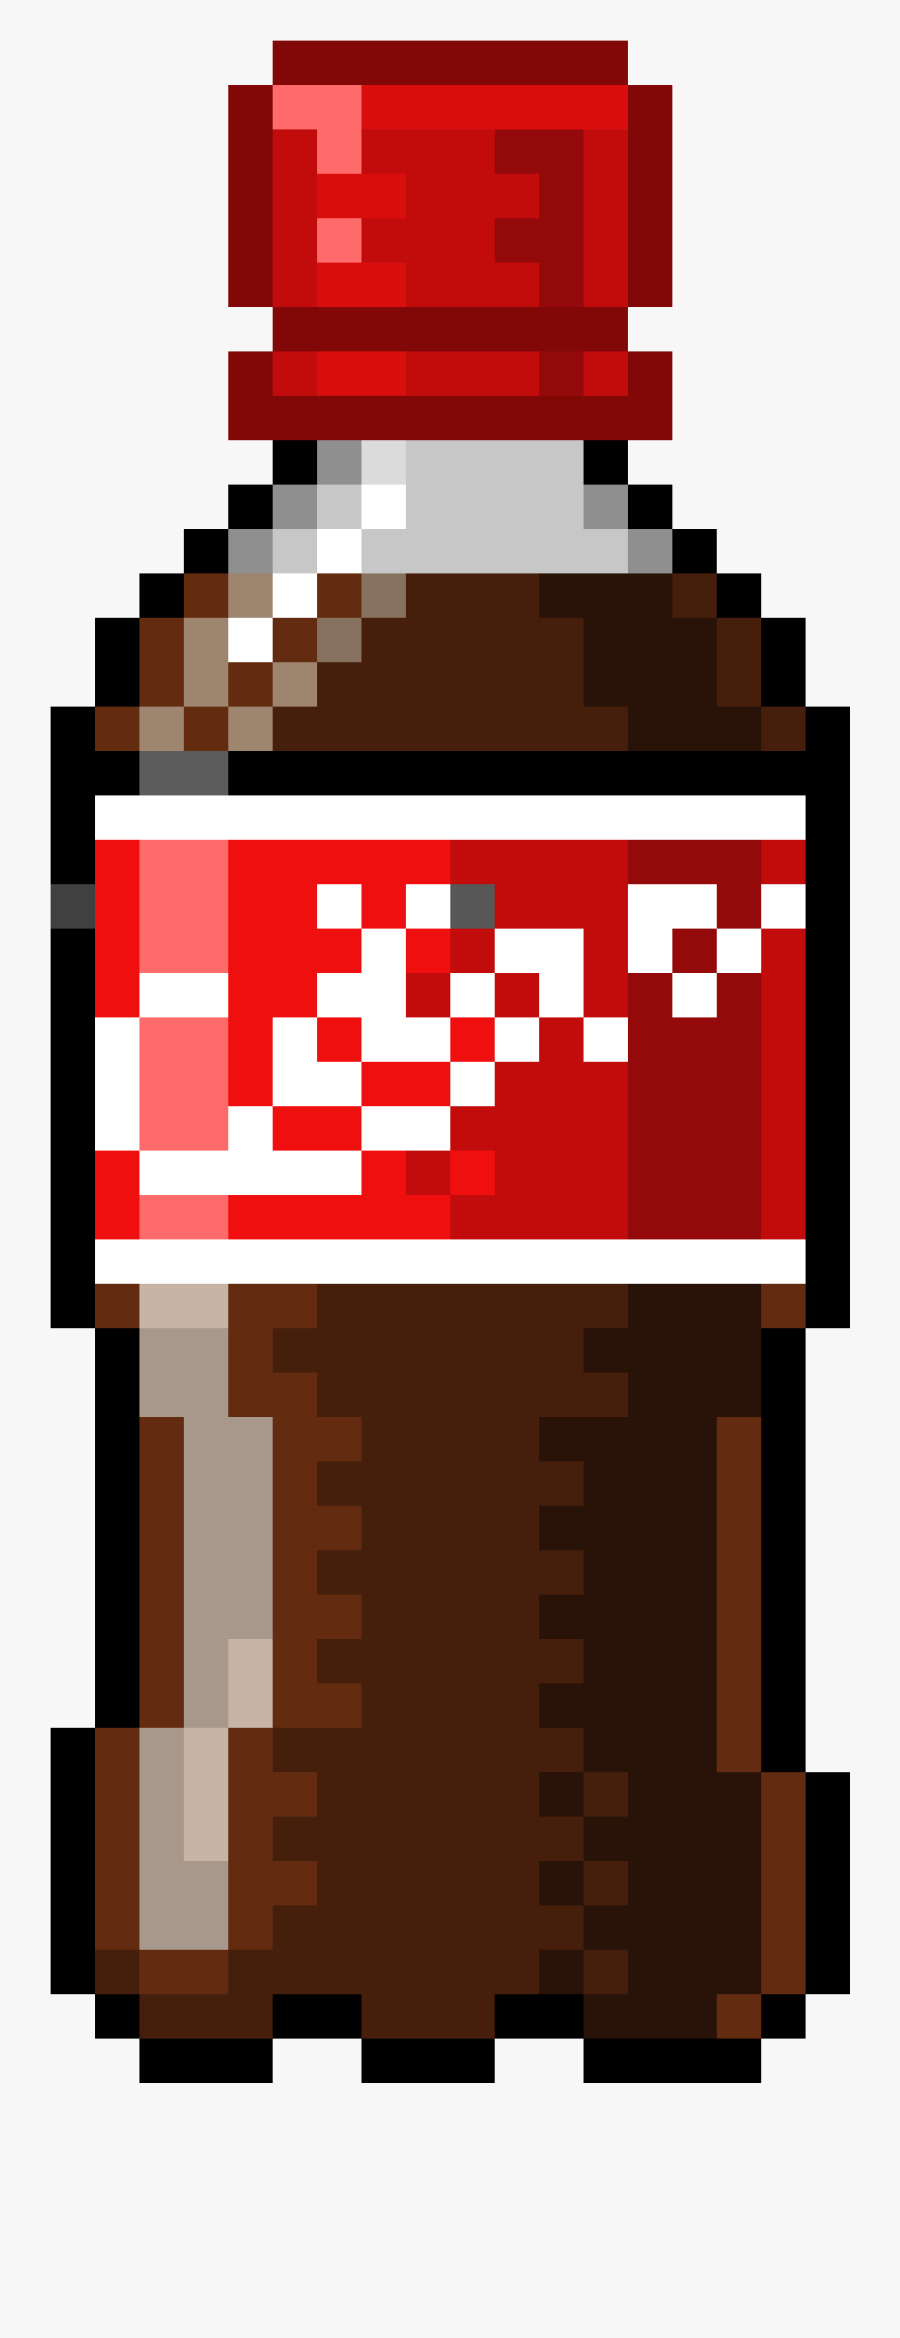 Coca Cola Bottle Pixel Art, Transparent Clipart